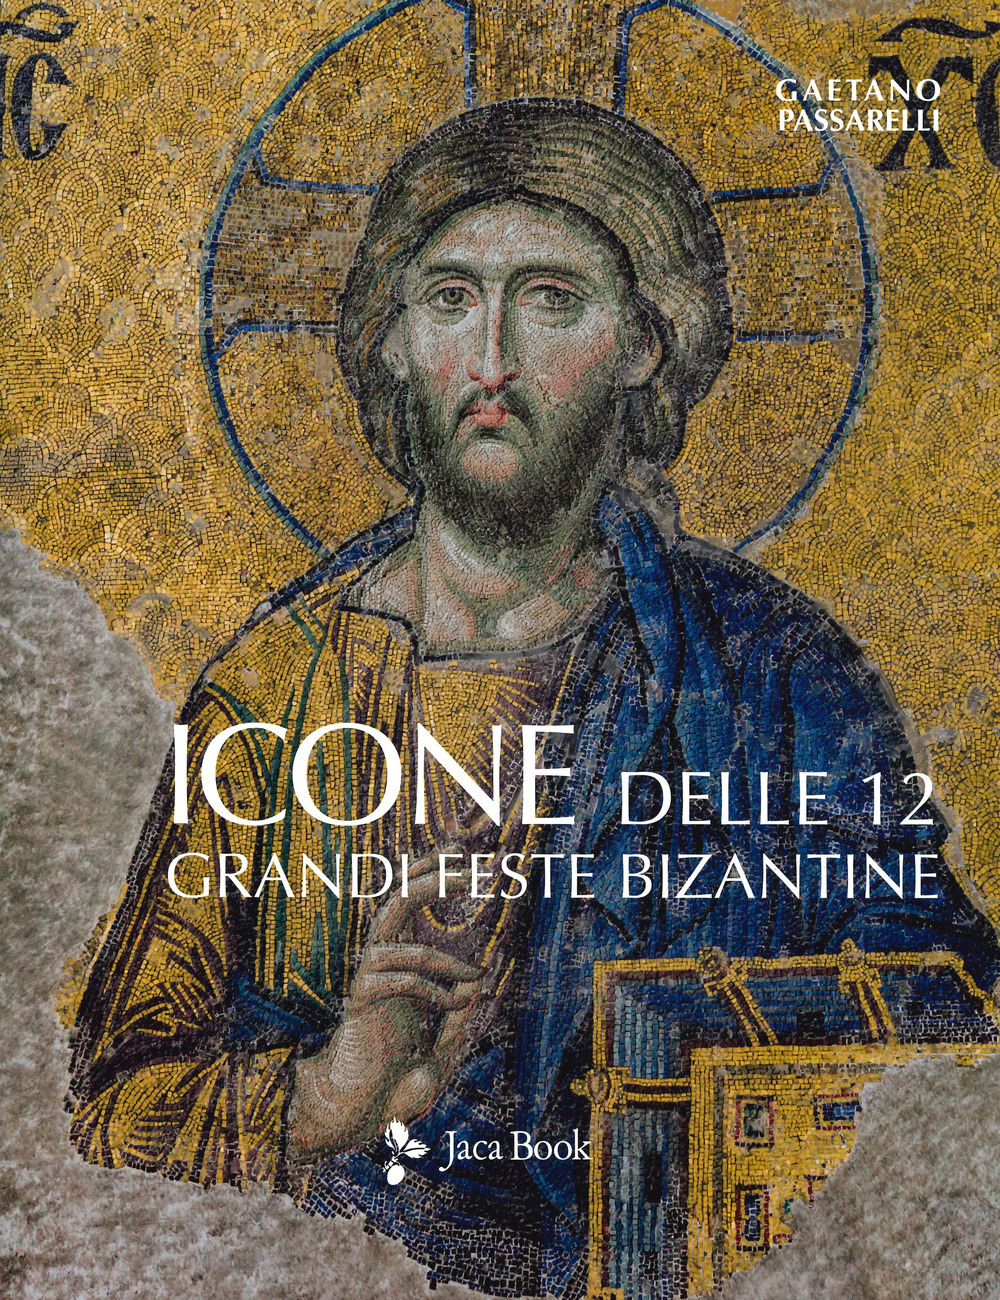 Libri Gaetano Passarelli - Icone Delle 12 Grandi Feste Bizantine. Ediz. A Colori NUOVO SIGILLATO, EDIZIONE DEL 23/05/2019 SUBITO DISPONIBILE